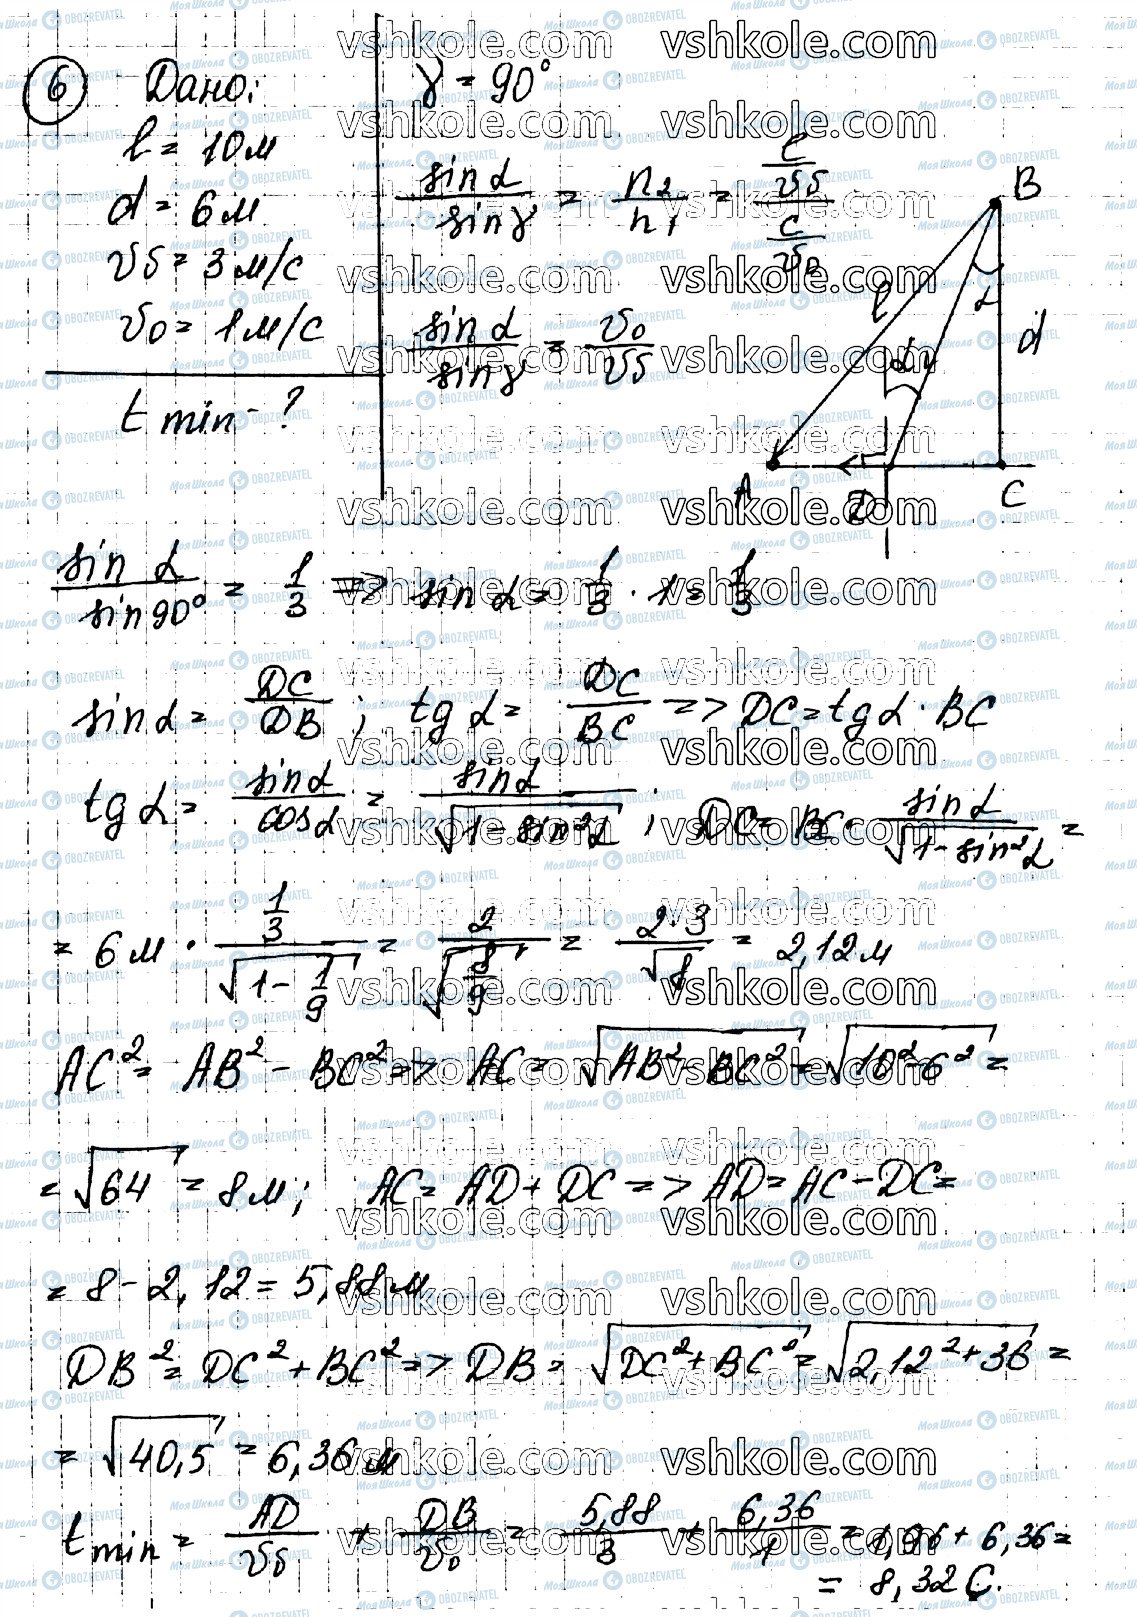 ГДЗ Физика 11 класс страница 6